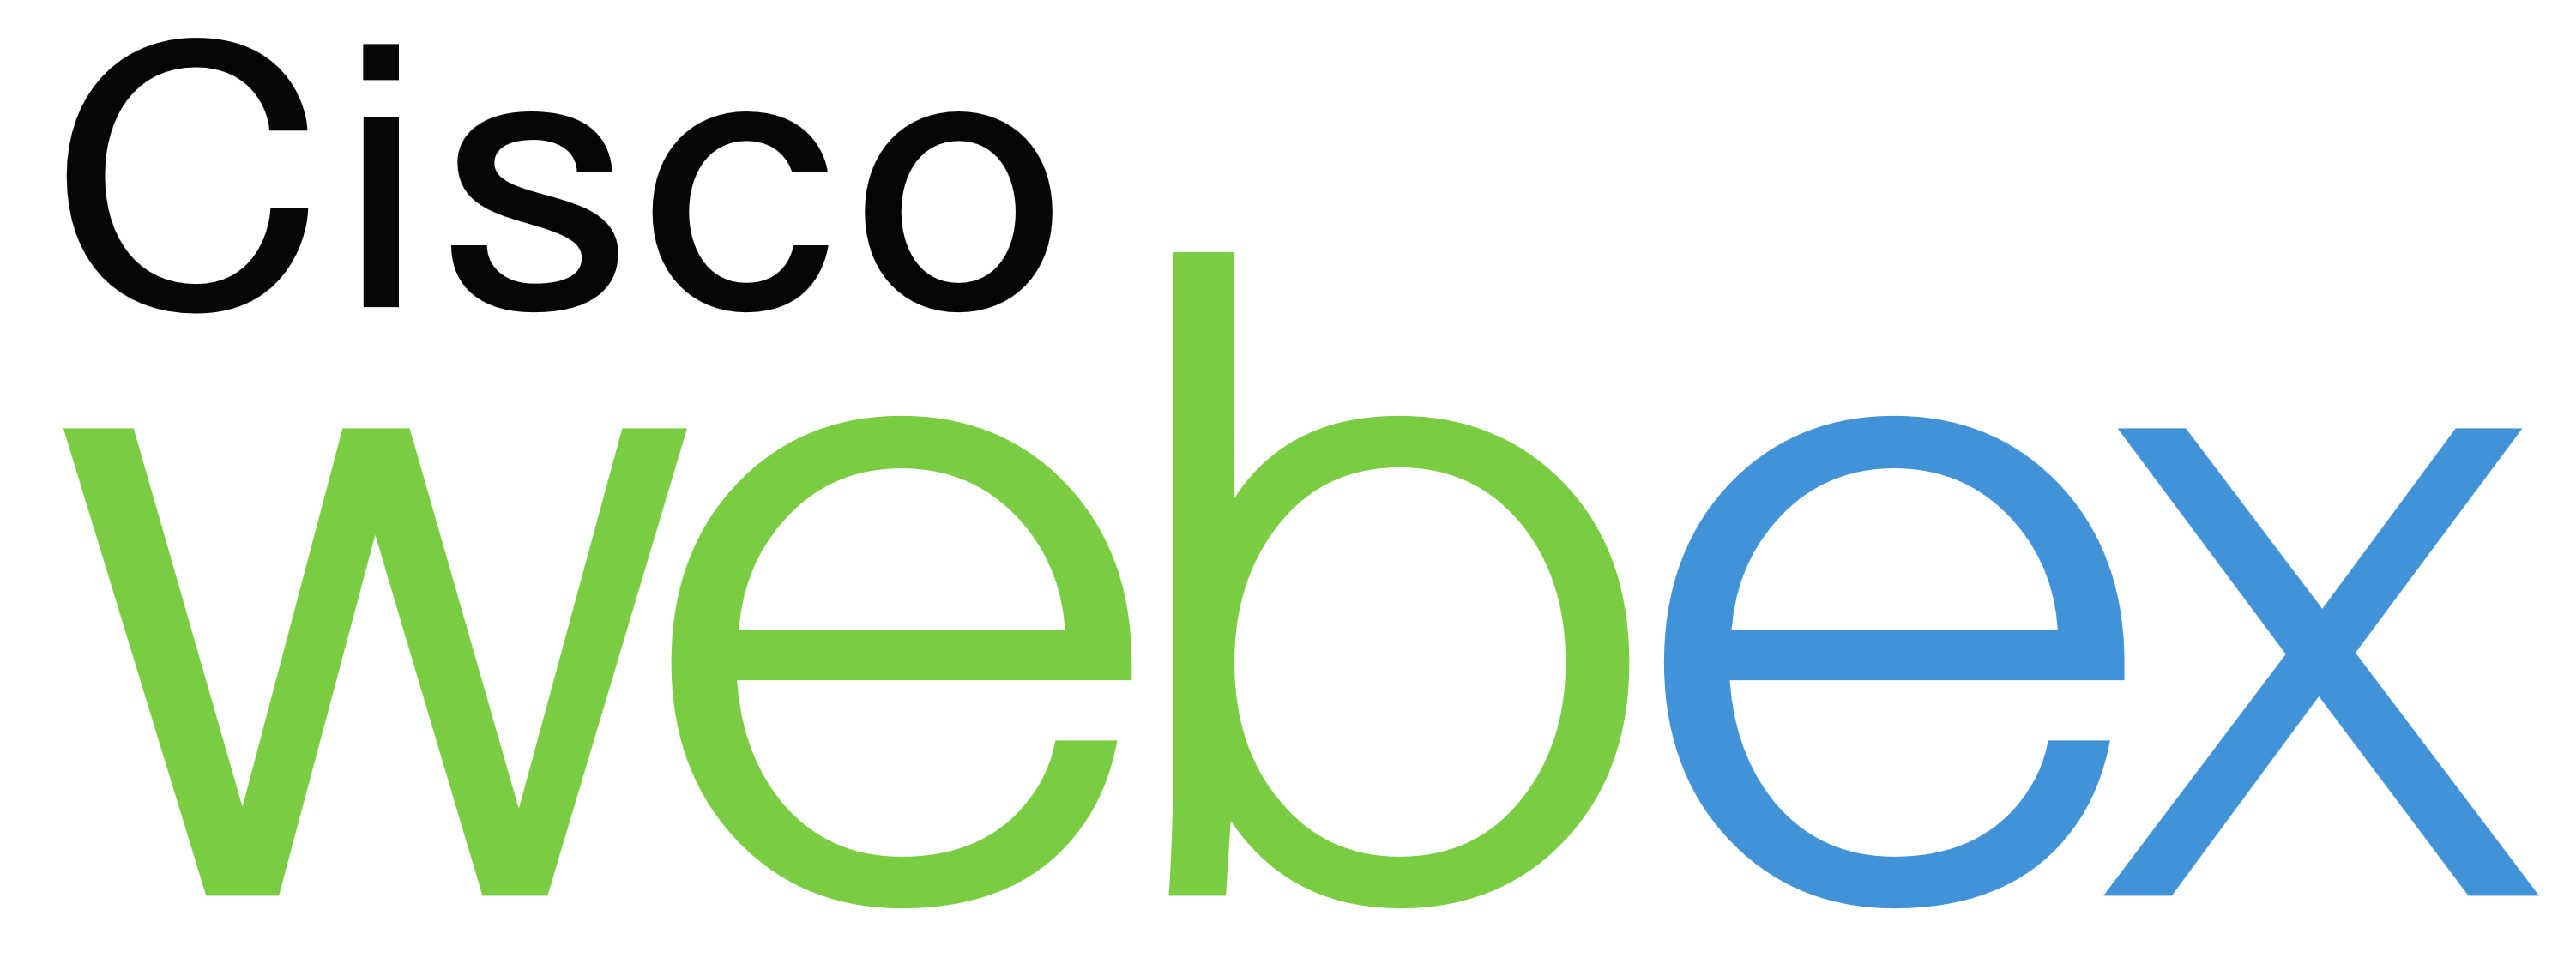 Cisco WebEx Logo - Cisco WebEx – Logos Download